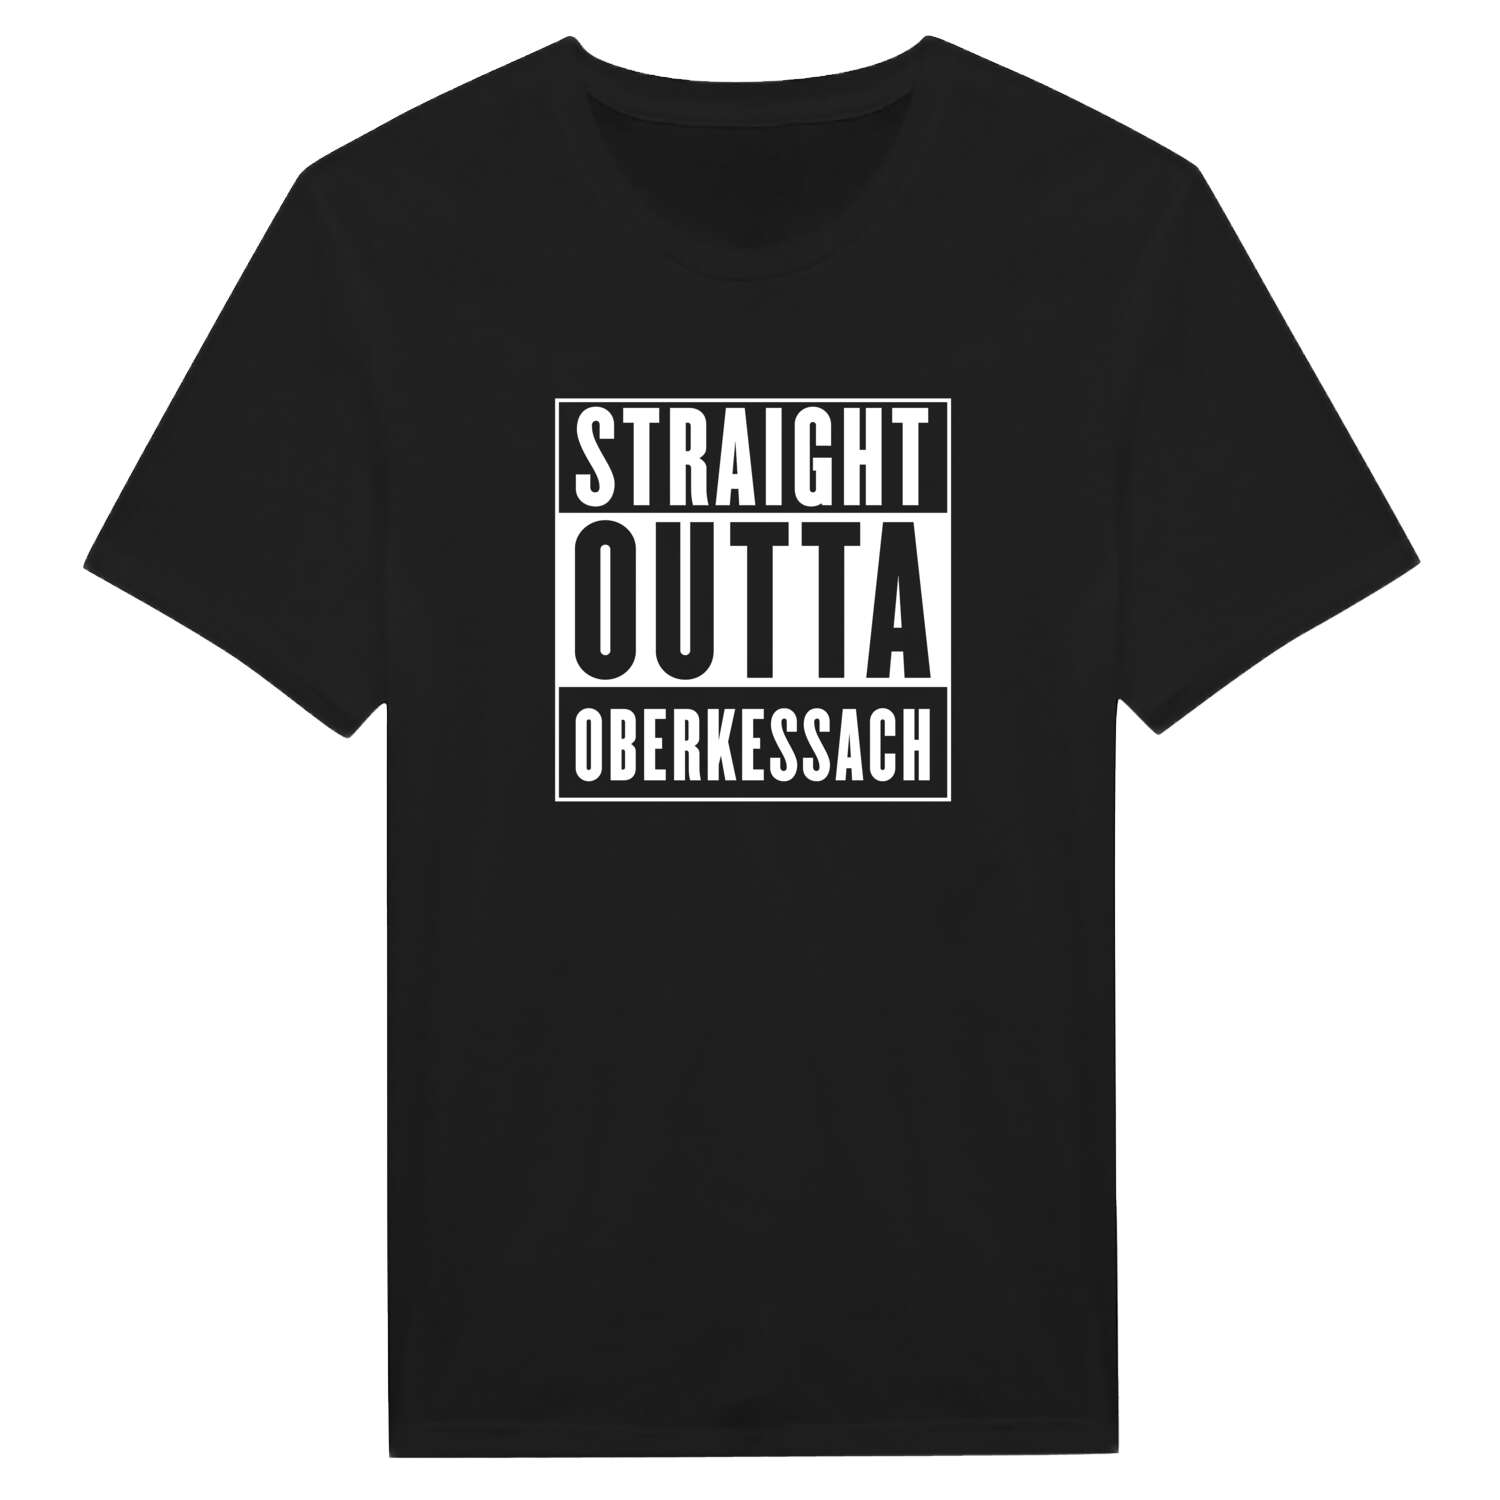 Oberkessach T-Shirt »Straight Outta«